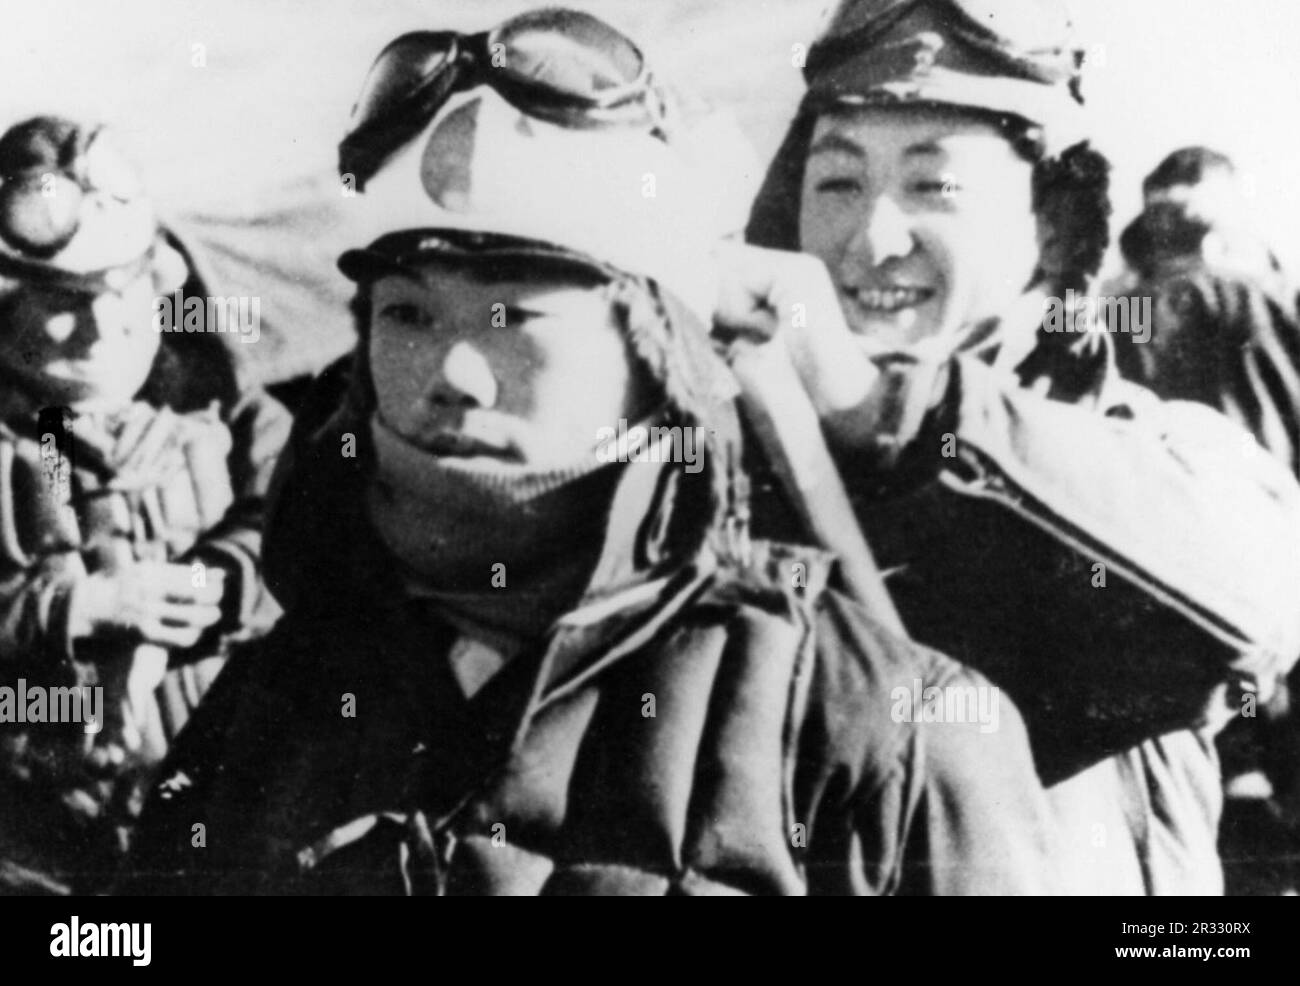 Ein Kamikaze-Pilot hat sein weißes Hachimaki-Stirnband an den Kopf gebunden  Stockfotografie - Alamy